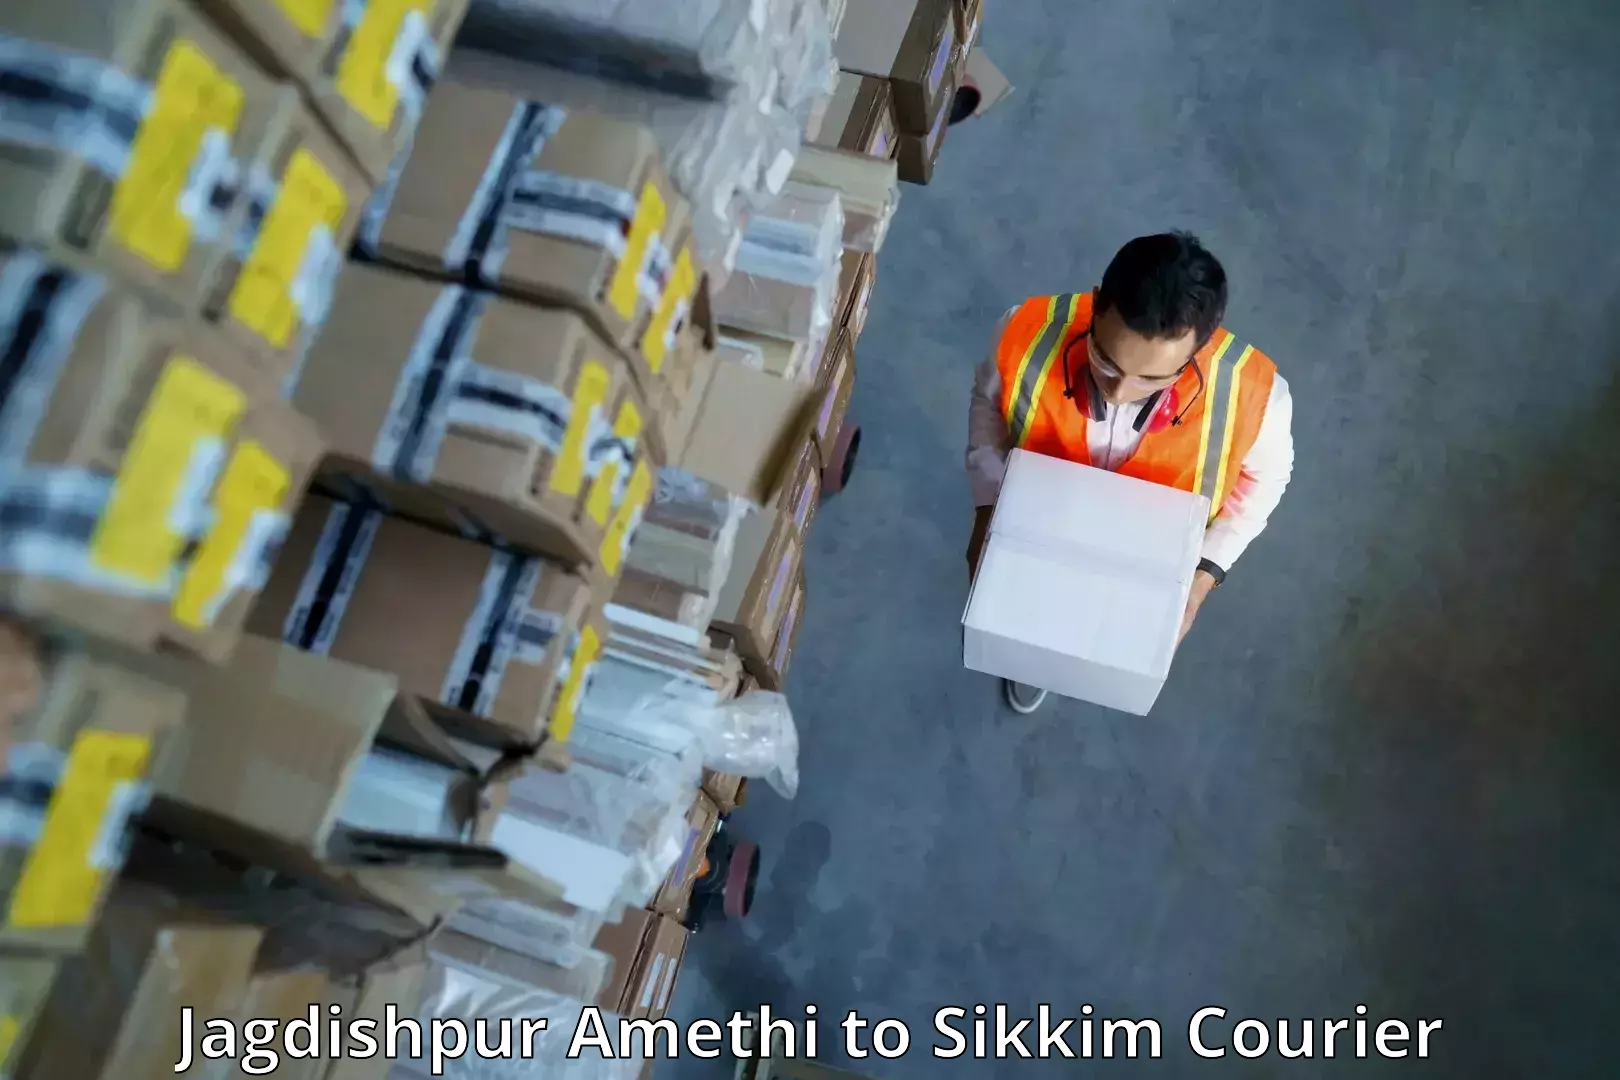 Digital courier platforms Jagdishpur Amethi to East Sikkim